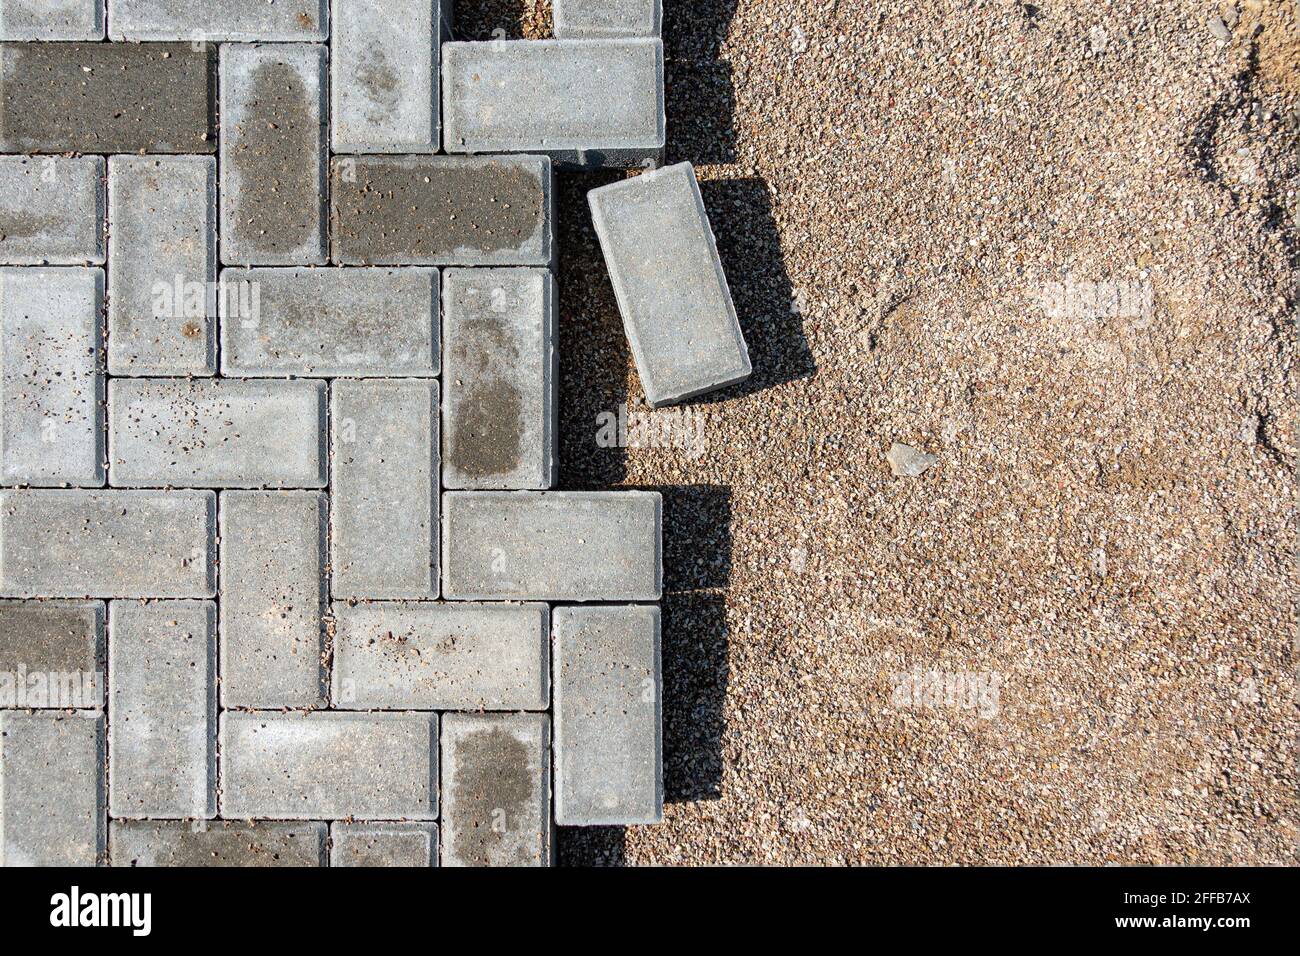 Pose de dalles de béton gris dans une passerelle. Processus de construction d'un trottoir pavé en briques, d'une route pavée à moitié construite Banque D'Images